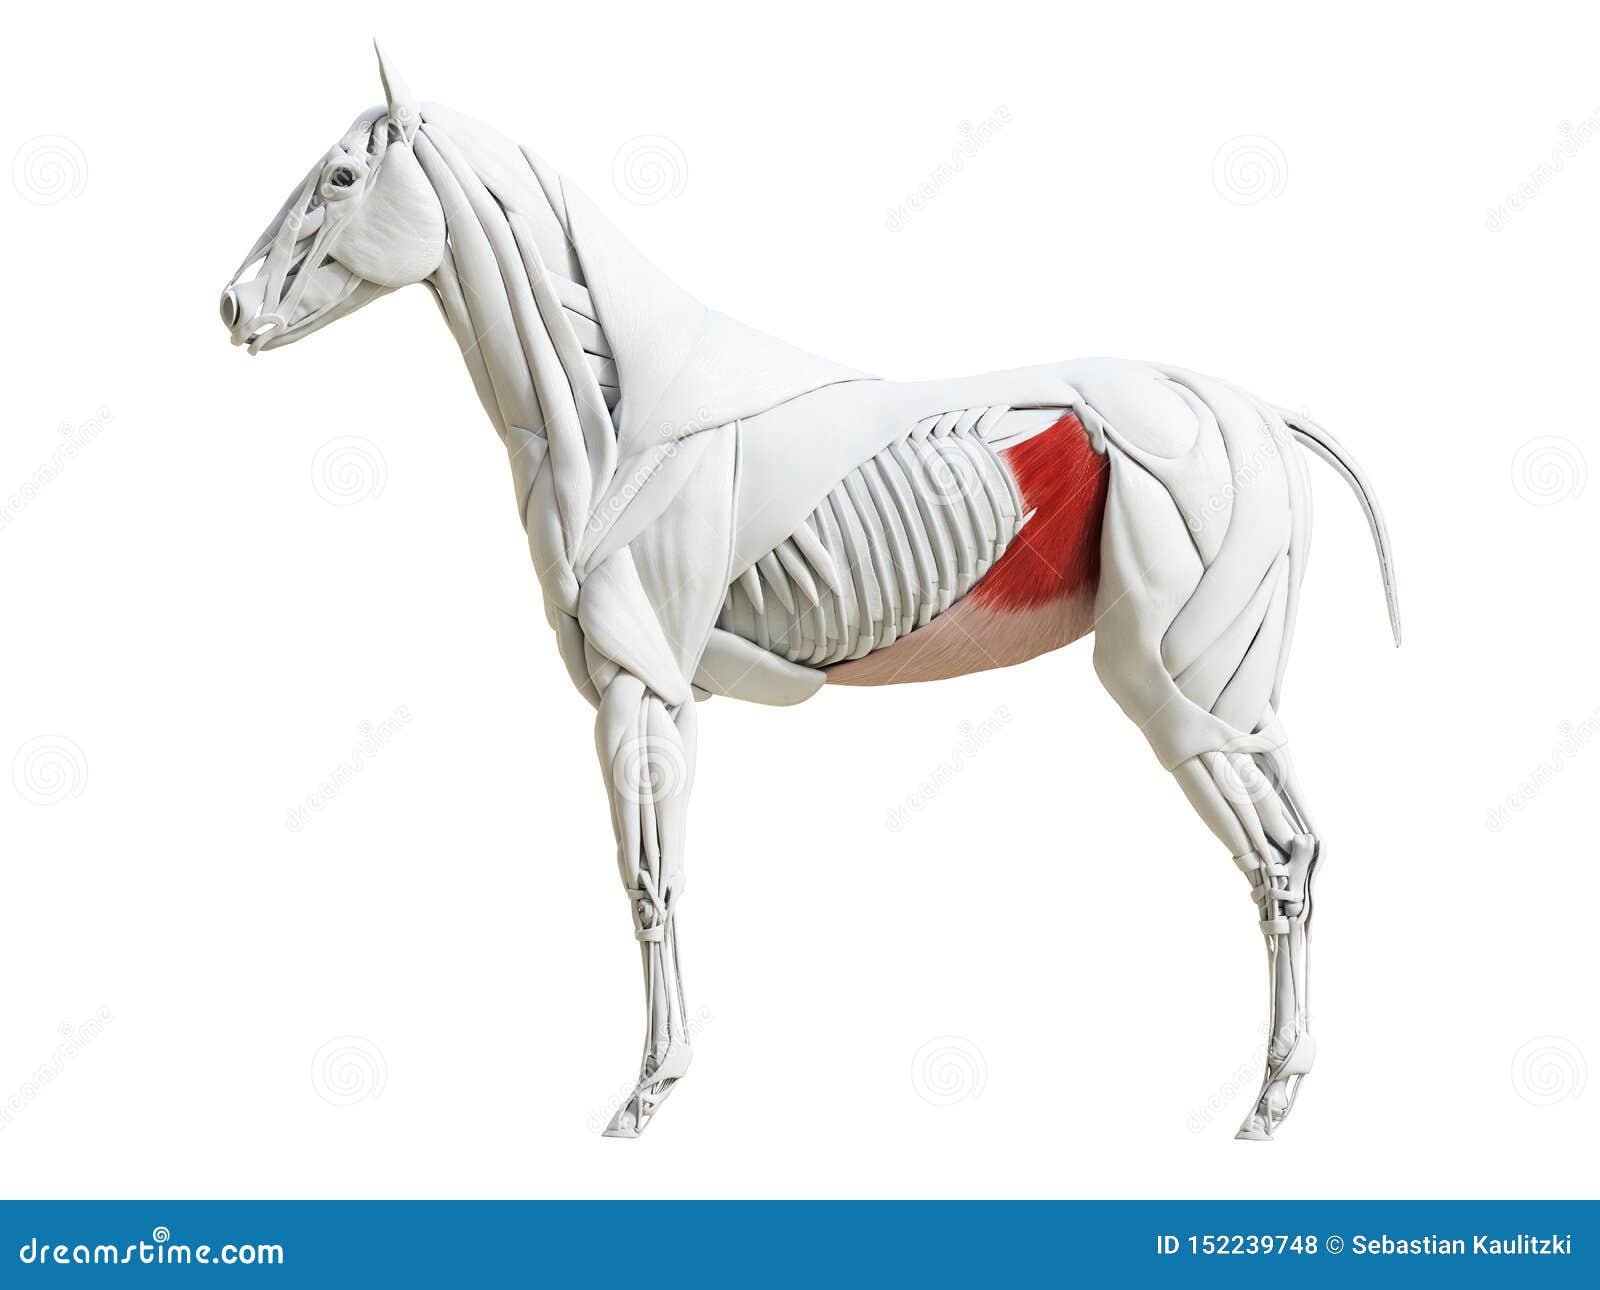 the equine muscle anatomy - obliquus internus abdominis